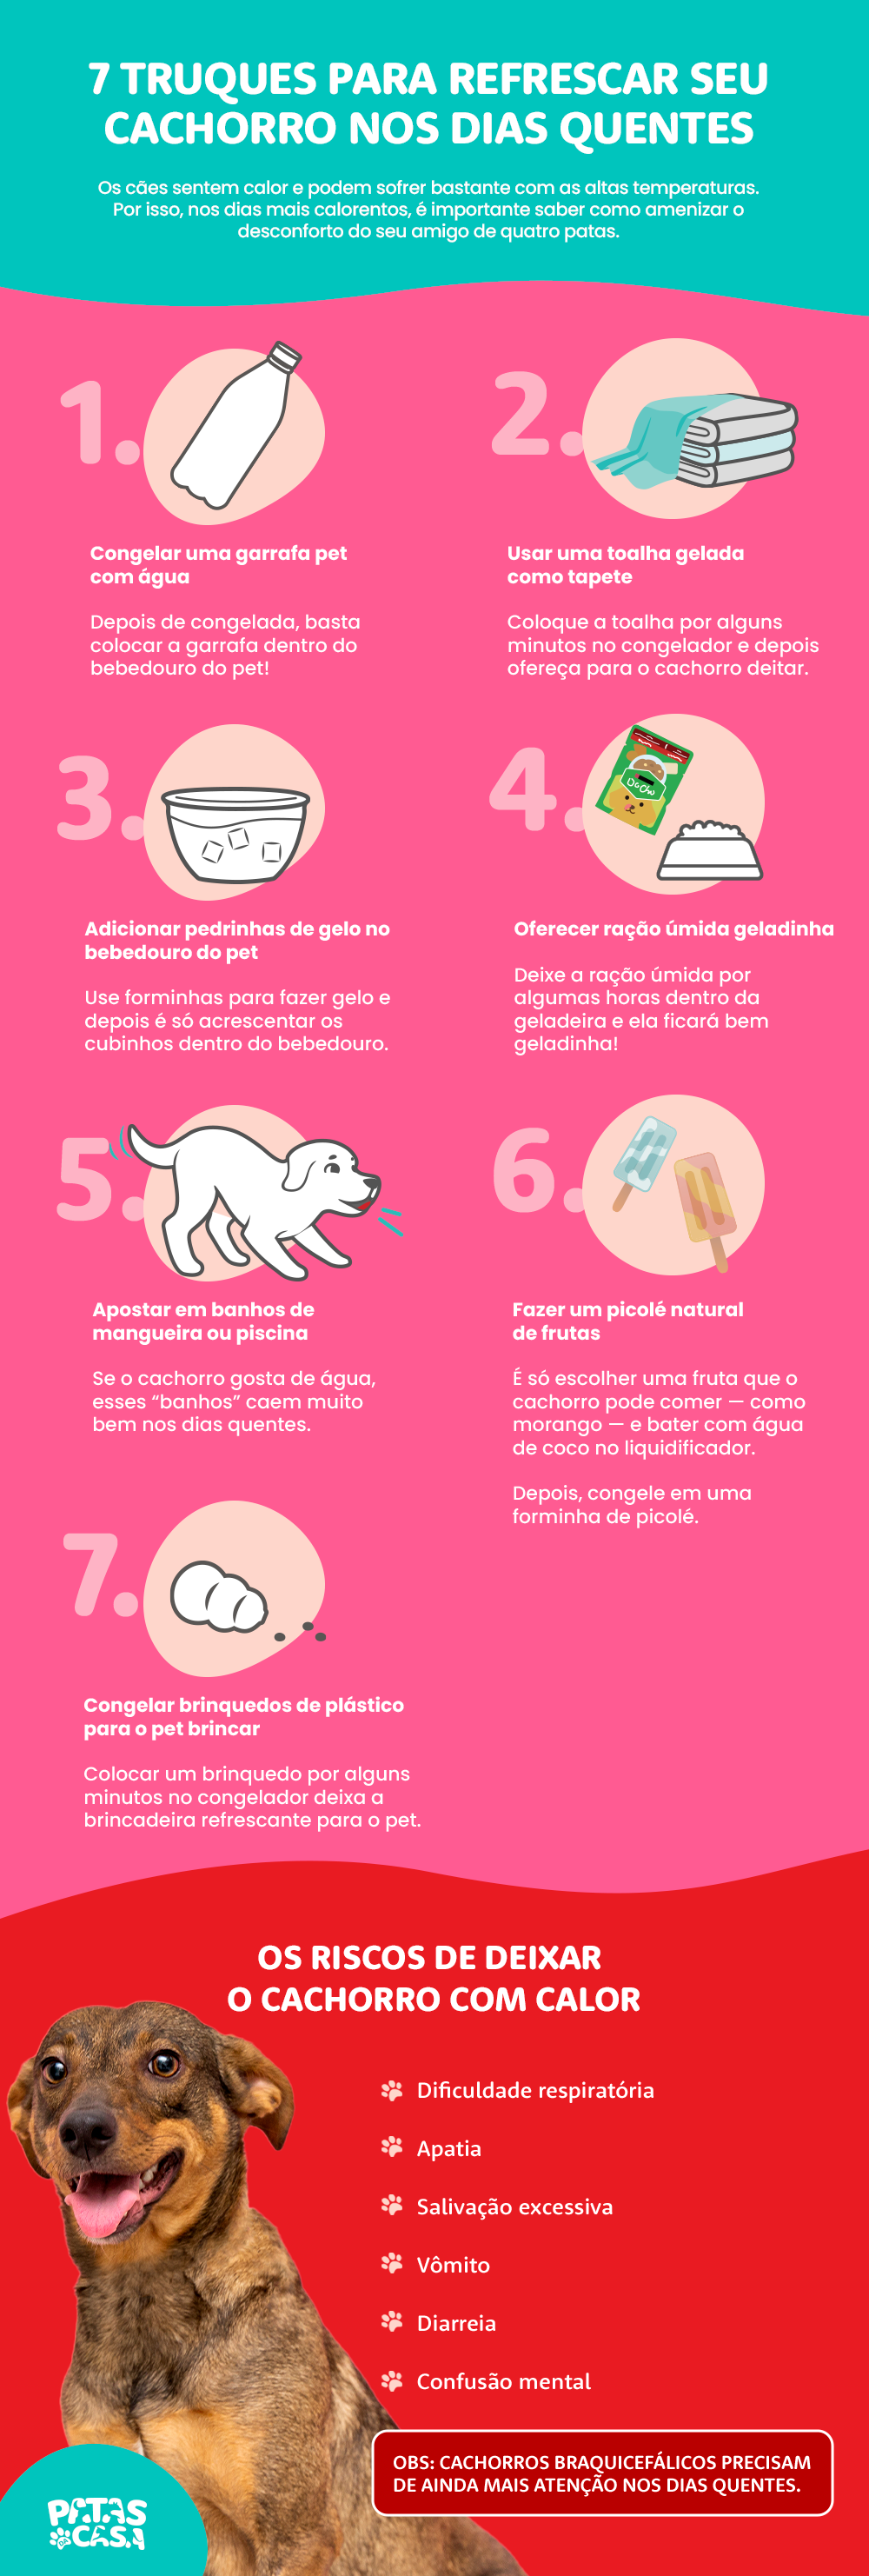 Bloco informativo mostrando como aliviar os sintomas de um cachorro com calor